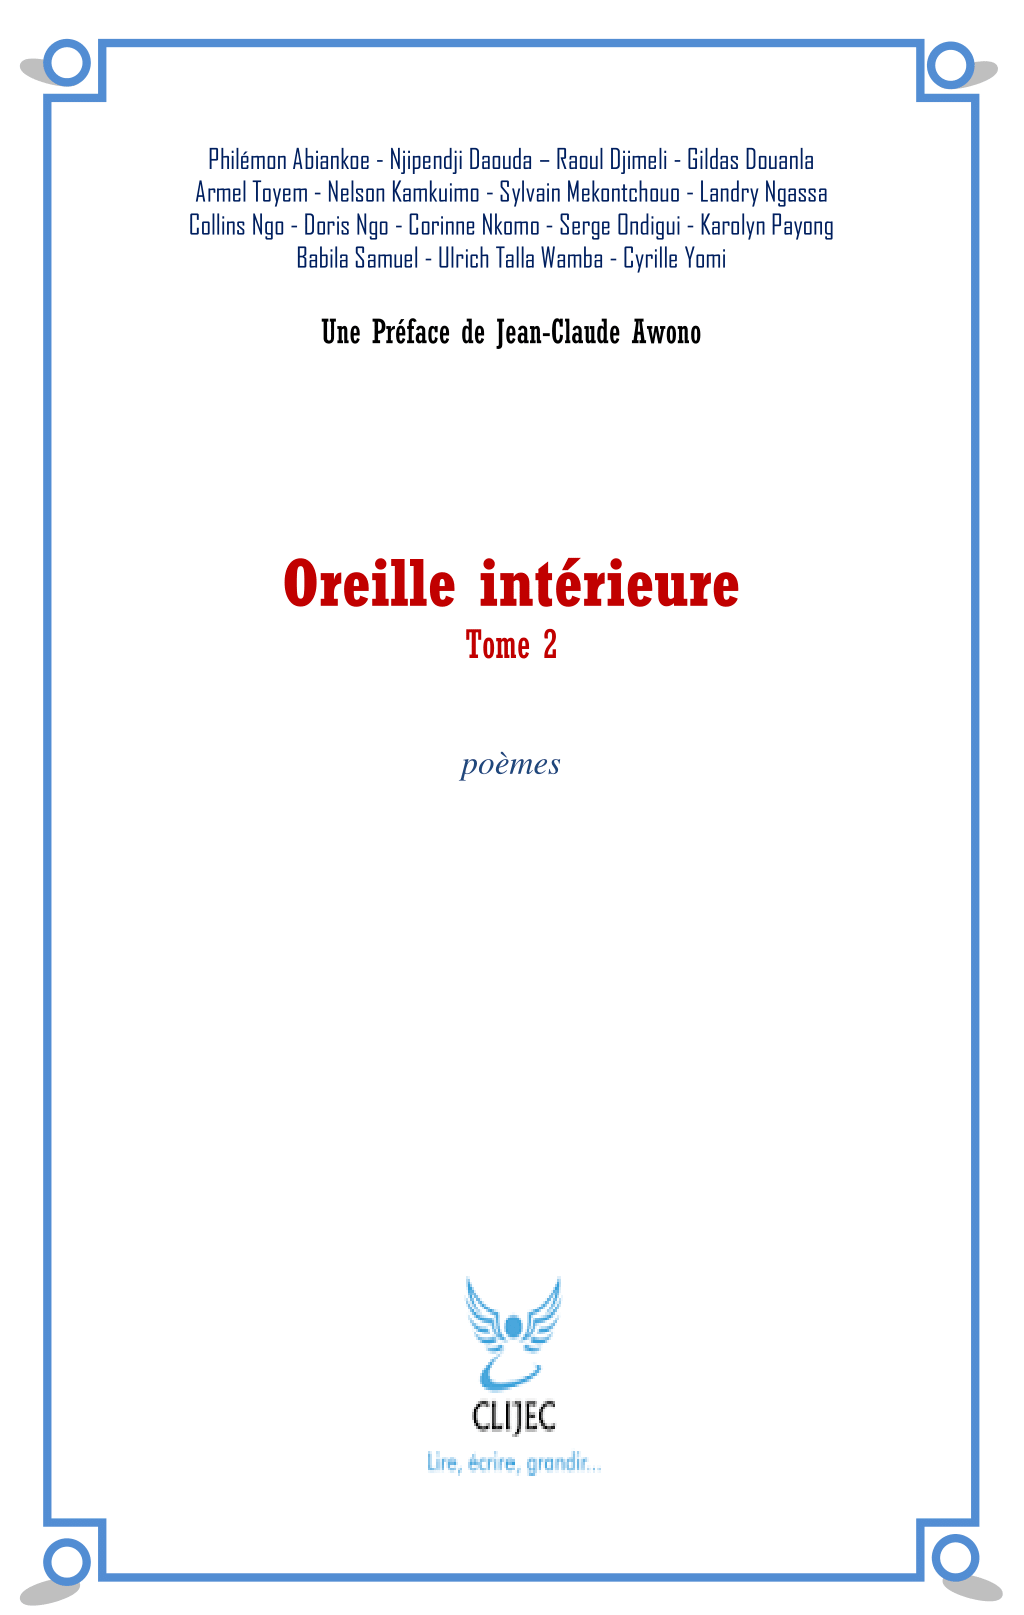 Couverture_oreille_interieure_clijec